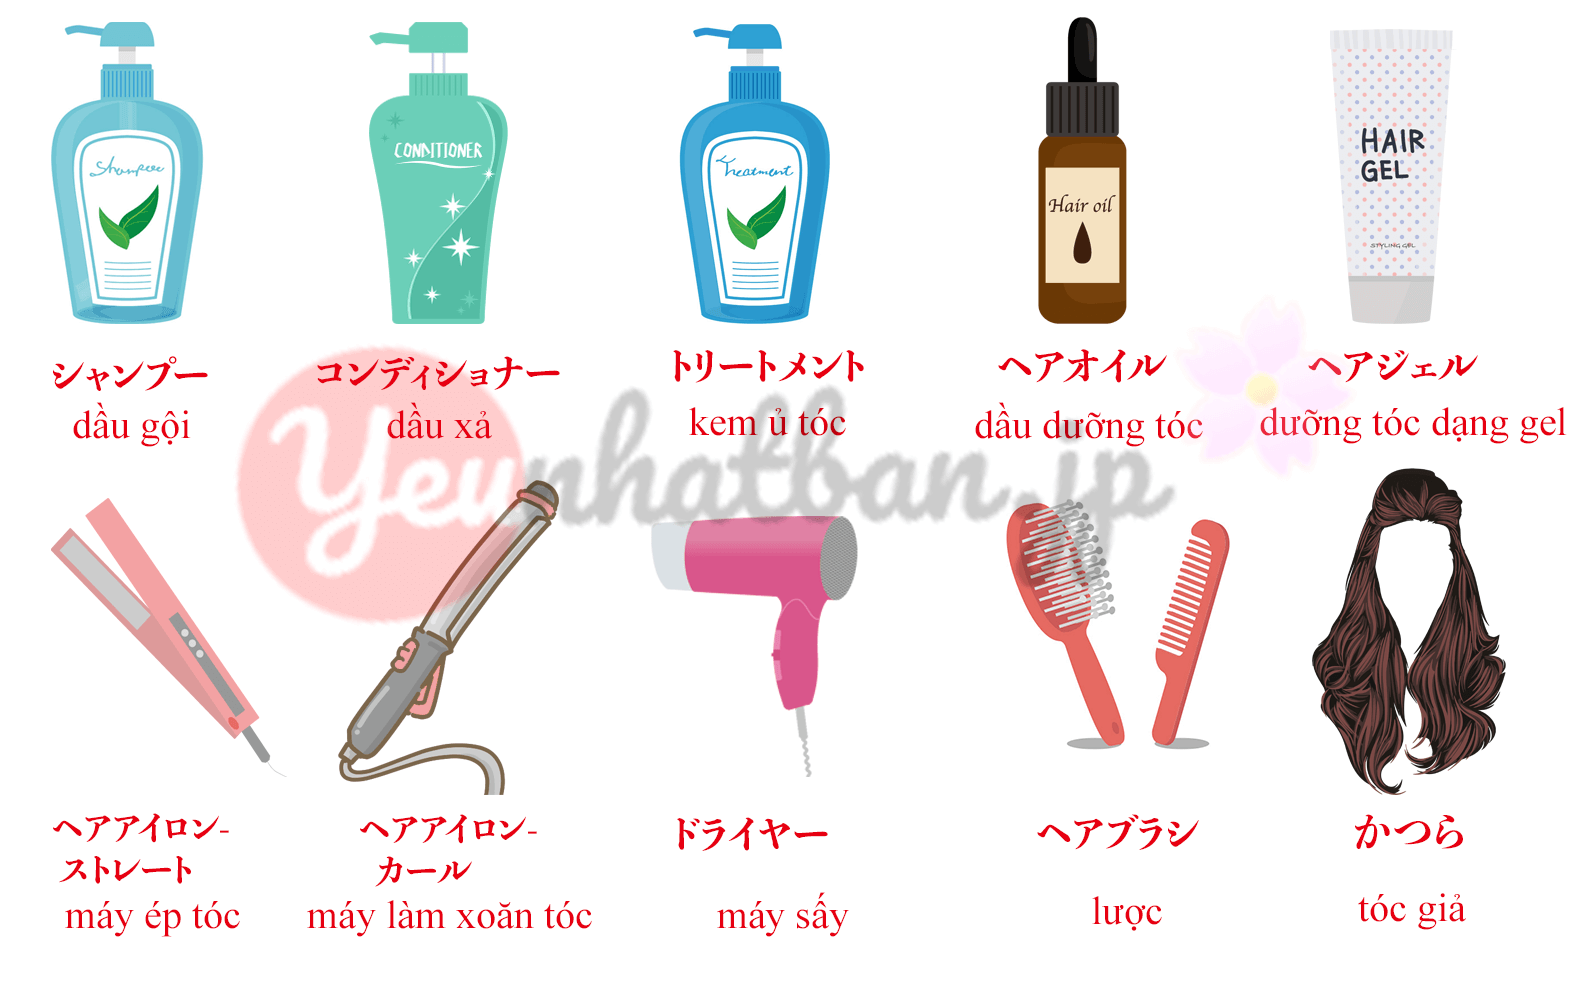 Tiếng Nhật có nhiều từ vựng liên quan đến tóc và kiểu tóc. Xem hình ảnh để học từ vựng này và sử dụng chúng để trò chuyện về tóc với người Nhật.